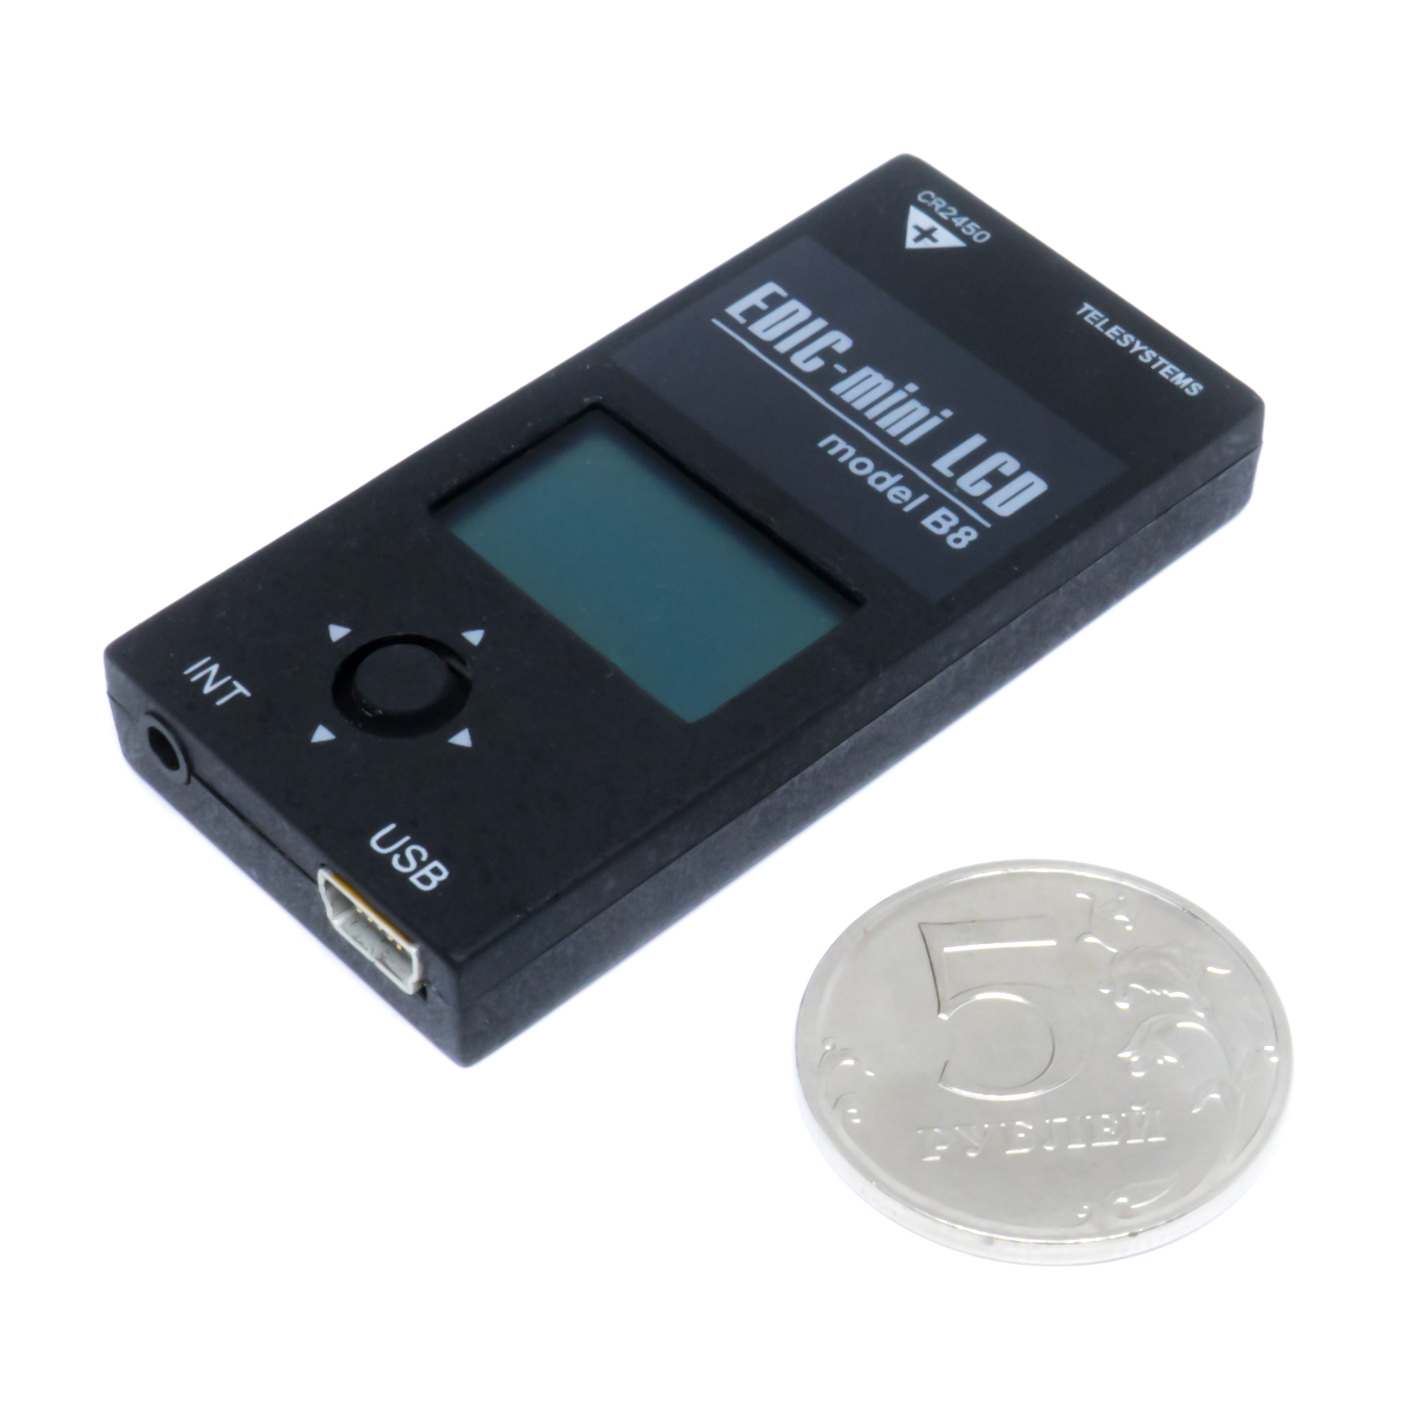 Все Телесистемы EM LCD B8-300h (пластик, размер 9*28*59мм, вес 18г, автономность до 120 ч, батарейка) видеонаблюдения в магазине Vidos Group